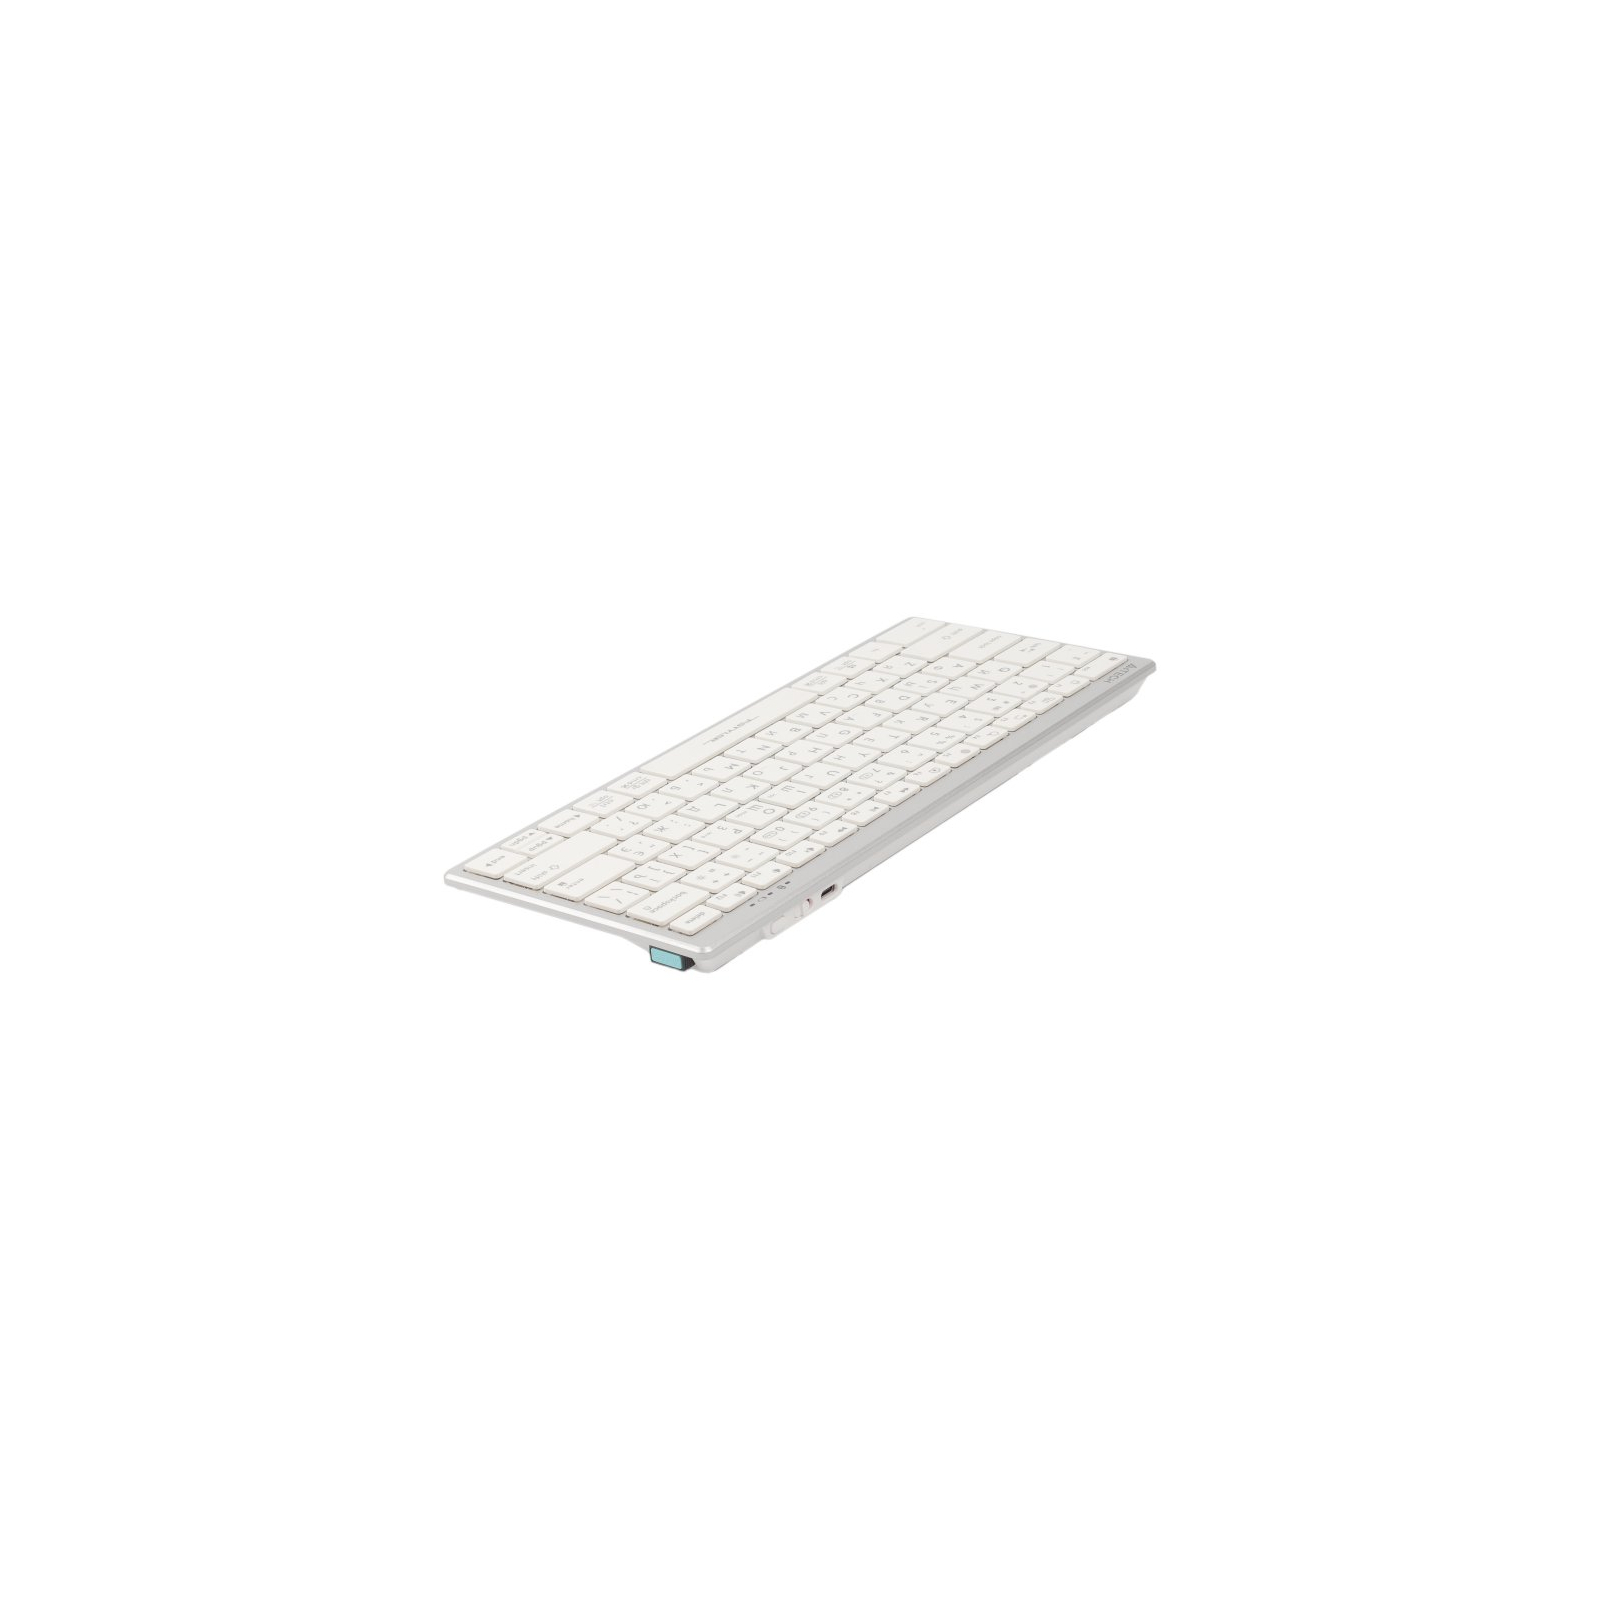 Клавиатура A4Tech FBX51C Wireless/Bluetooth White (FBX51C White) изображение 4